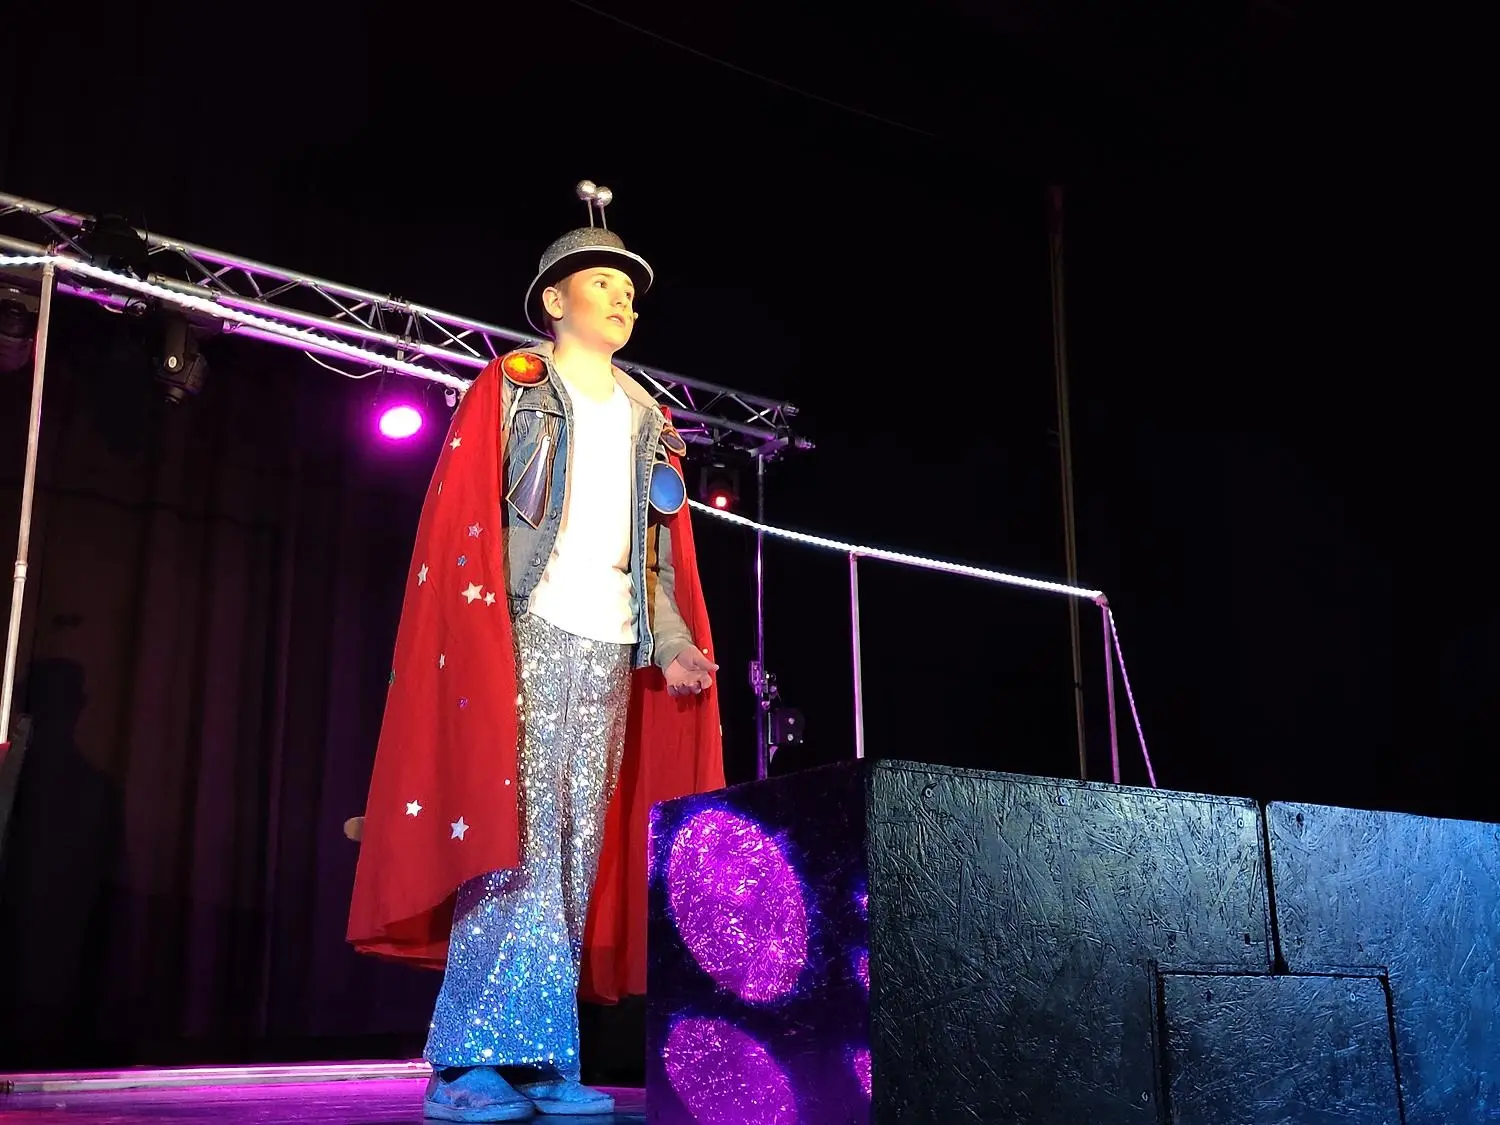 Pojke på scen med röd cape och glittrig hatt